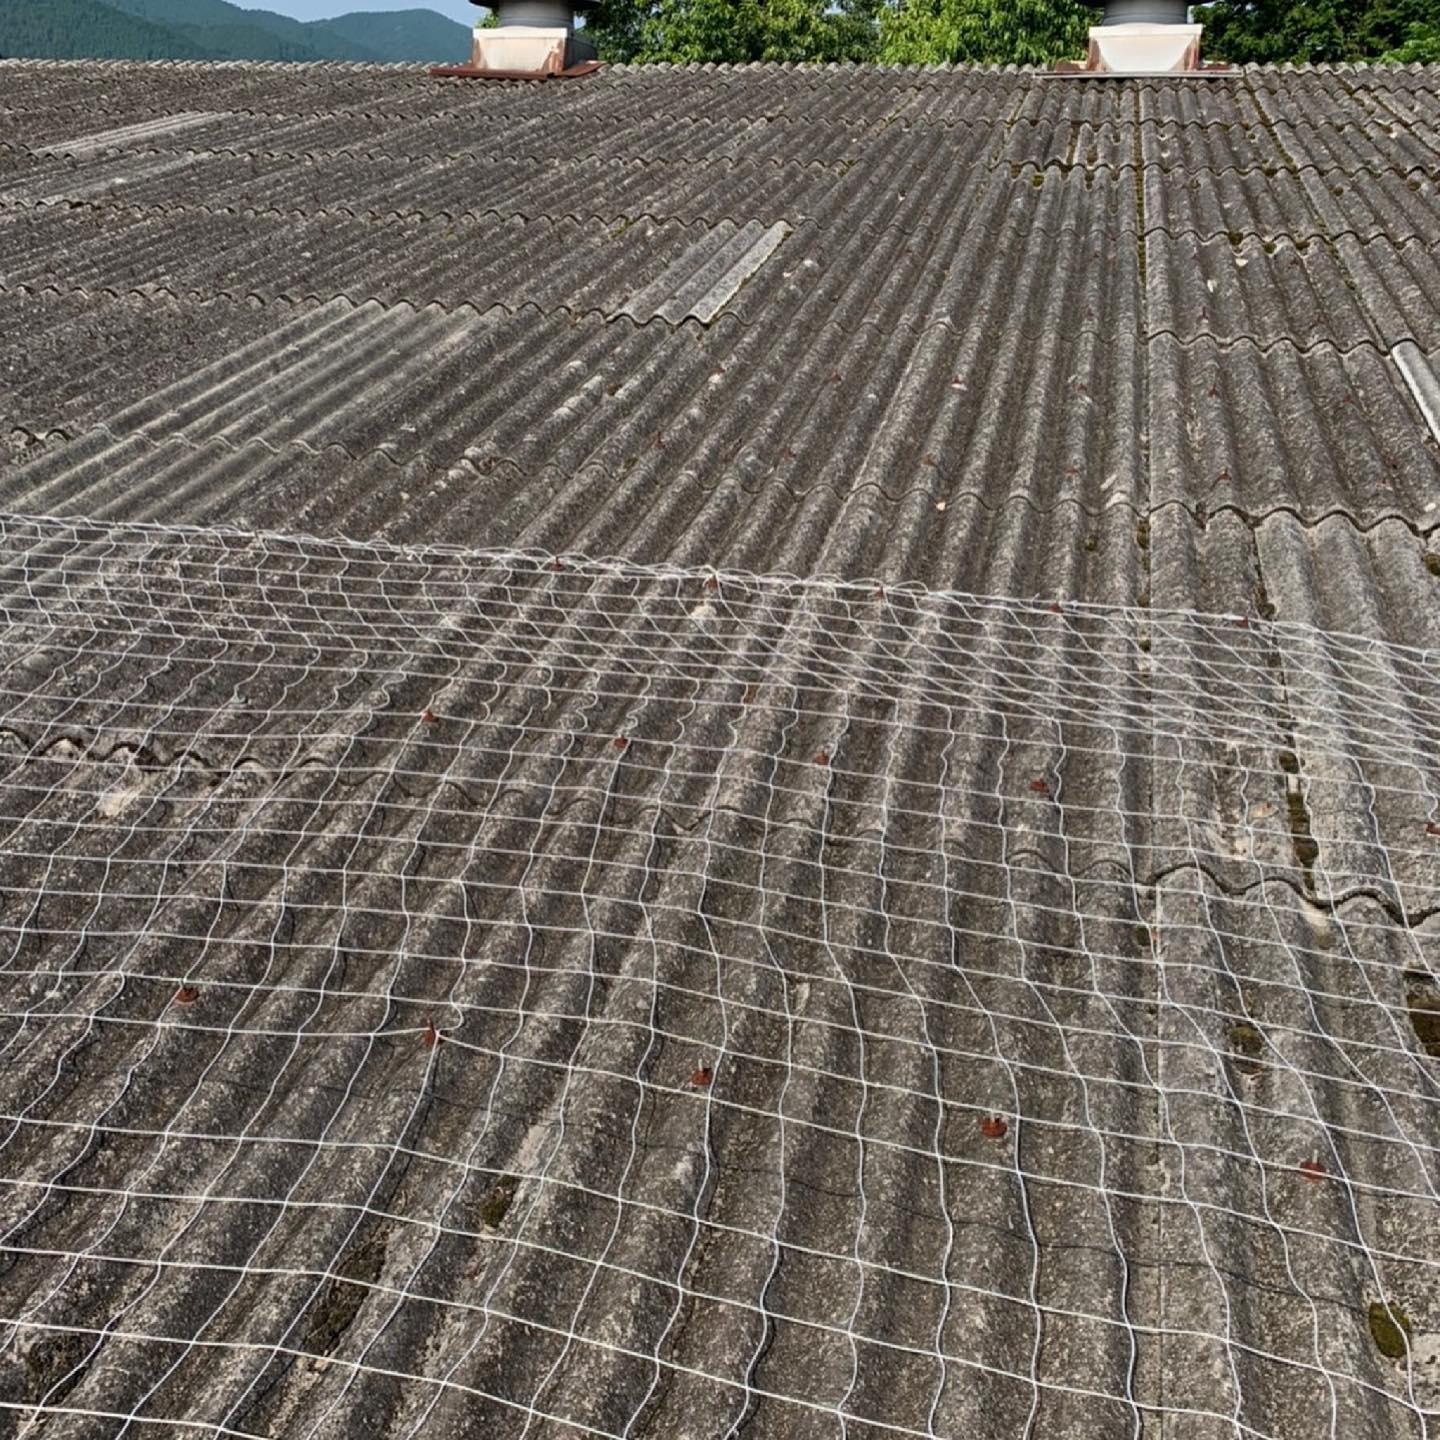 スレート屋根が雨漏れしていたので、協力業者さんにお願いして、カバー工法を施工していきます。雨が降らなければ、あと2、3日で完成するかな〜️️️#熊本#防水工事#雨漏れ#シーリング工事#塗装工事